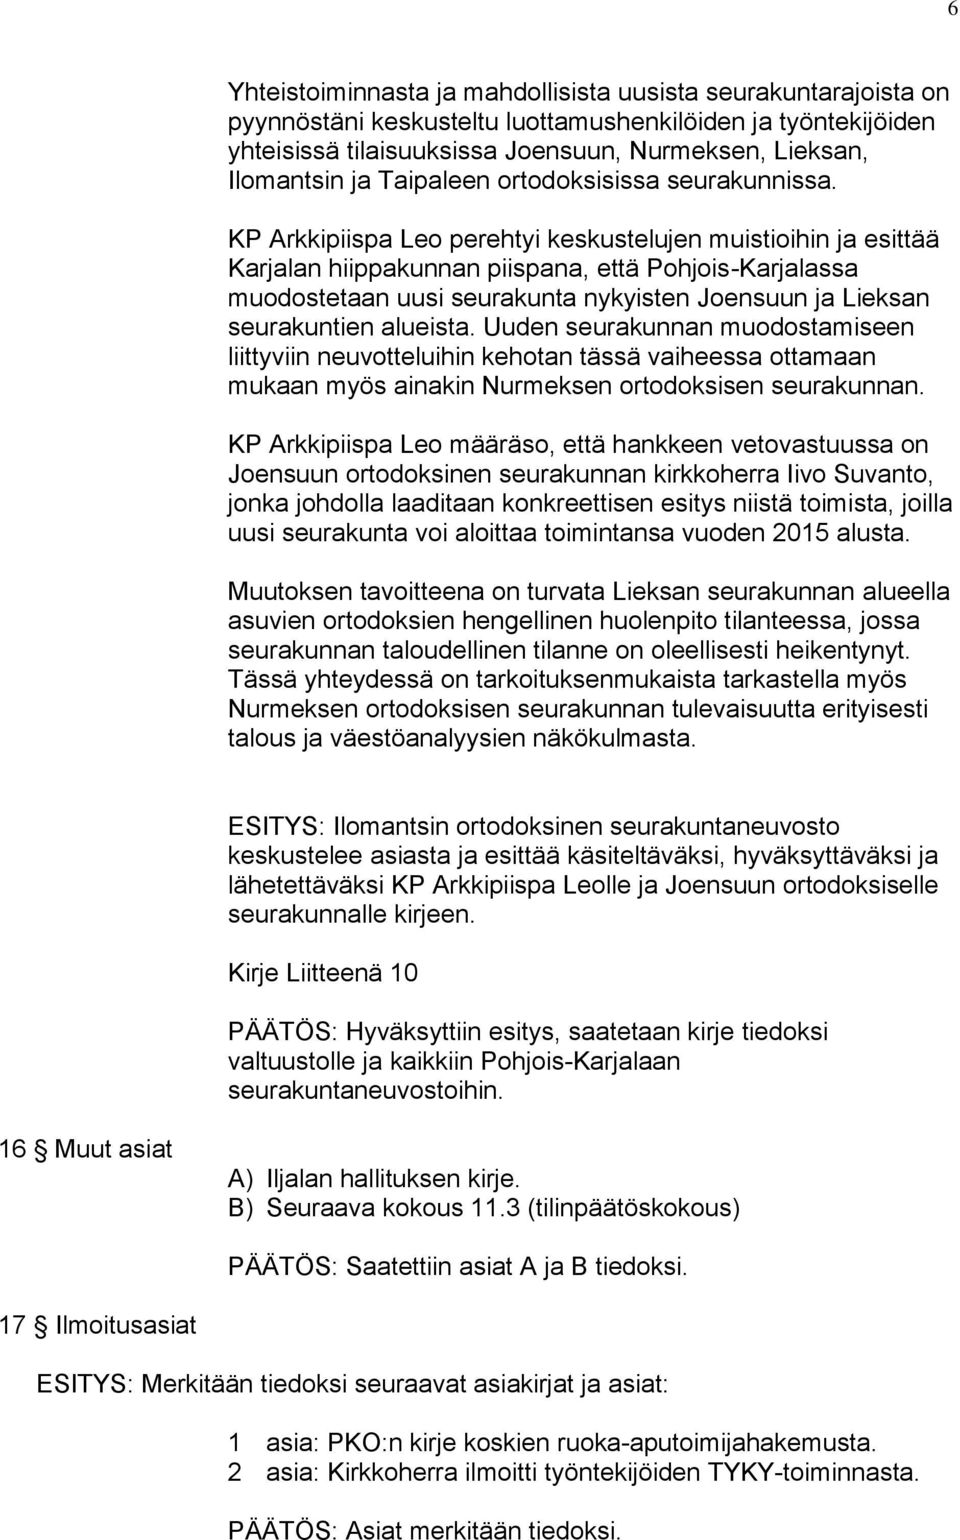 KP Arkkipiispa Leo perehtyi keskustelujen muistioihin ja esittää Karjalan hiippakunnan piispana, että Pohjois-Karjalassa muodostetaan uusi seurakunta nykyisten Joensuun ja Lieksan seurakuntien